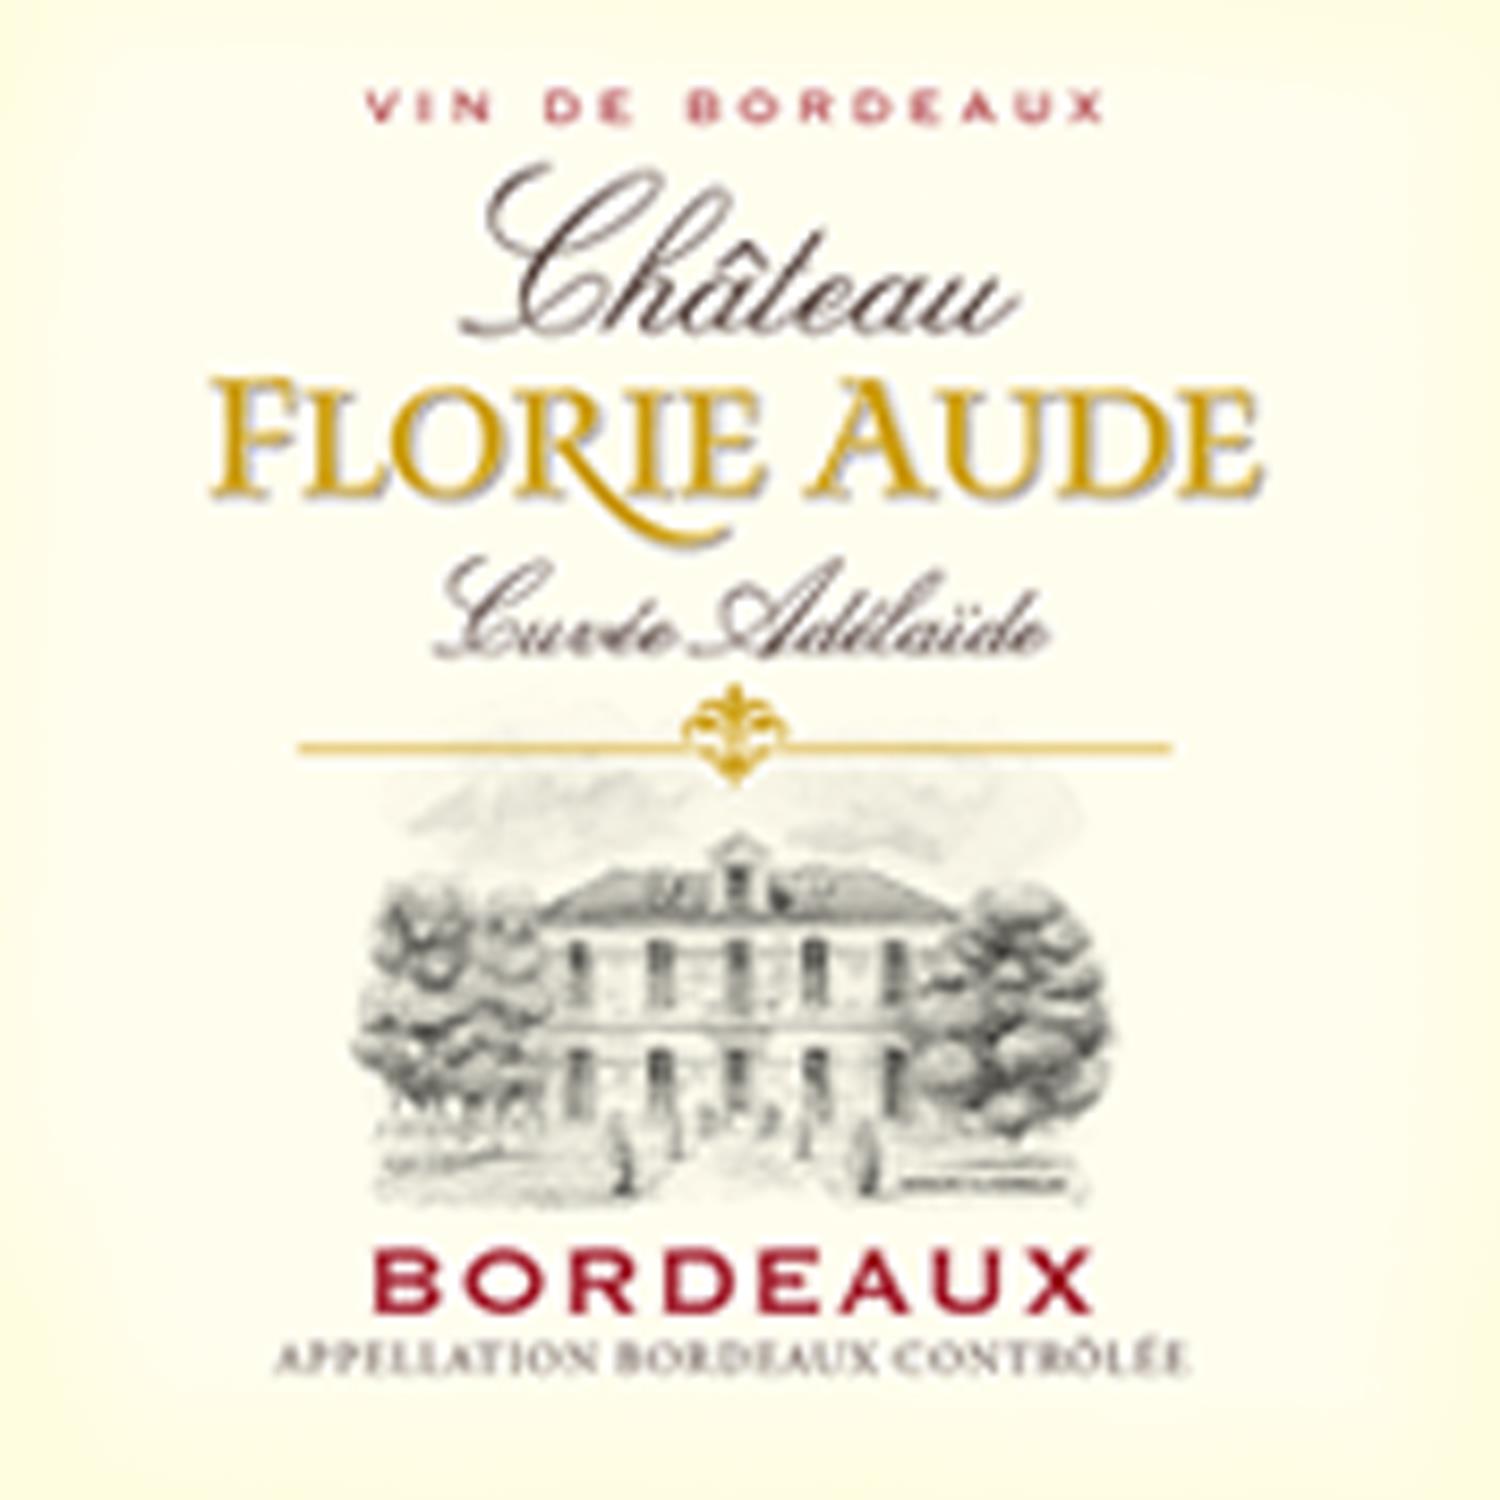 弗里尤德堡 Château Florie Aude